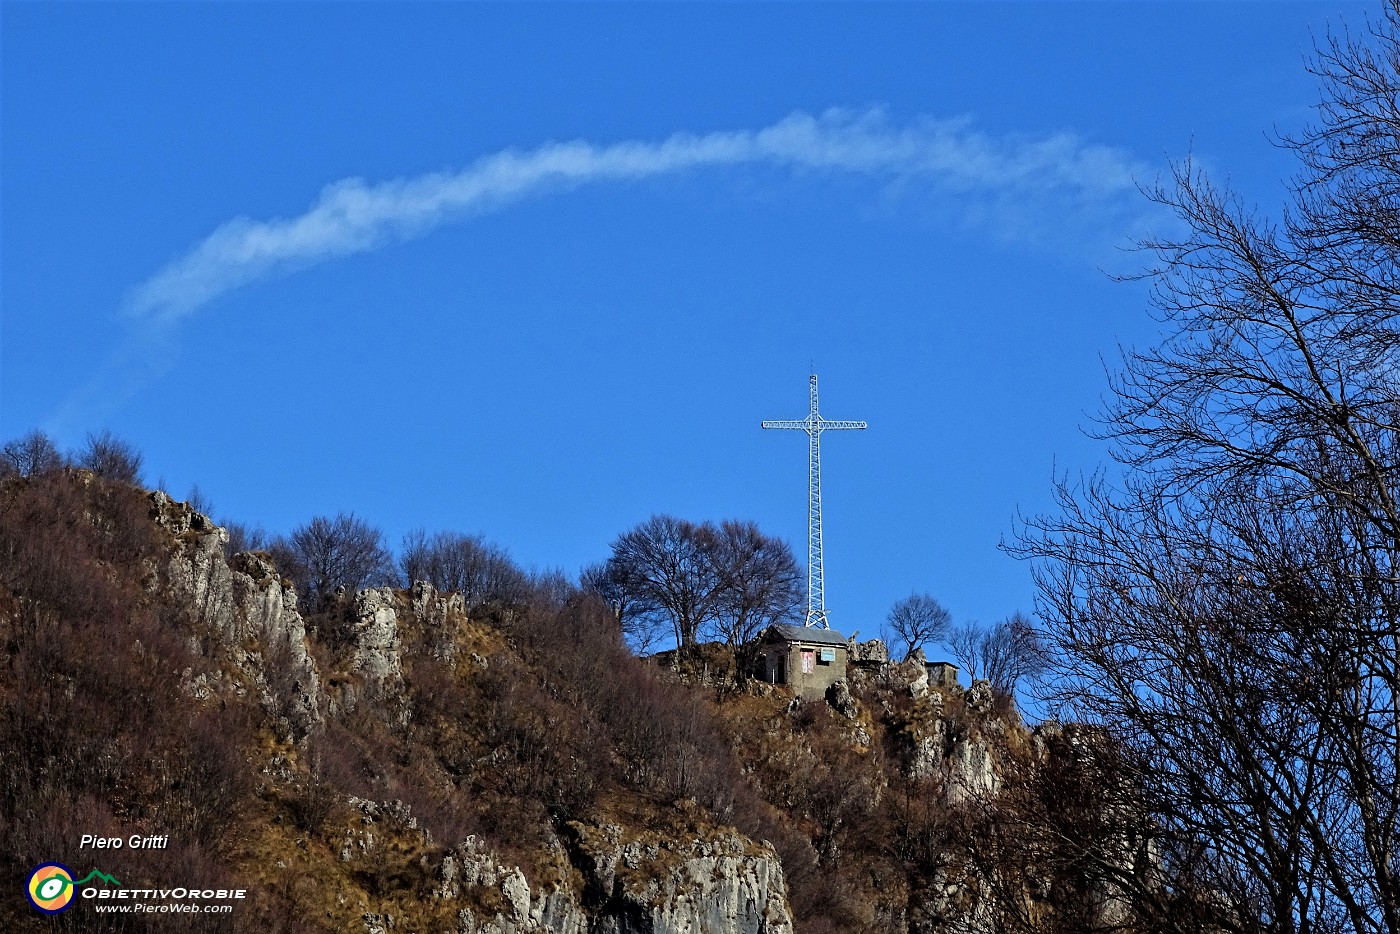 29 Dal rifugio vista sulla croce del Monte Zucco con aureola di nuvola bianca.JPG